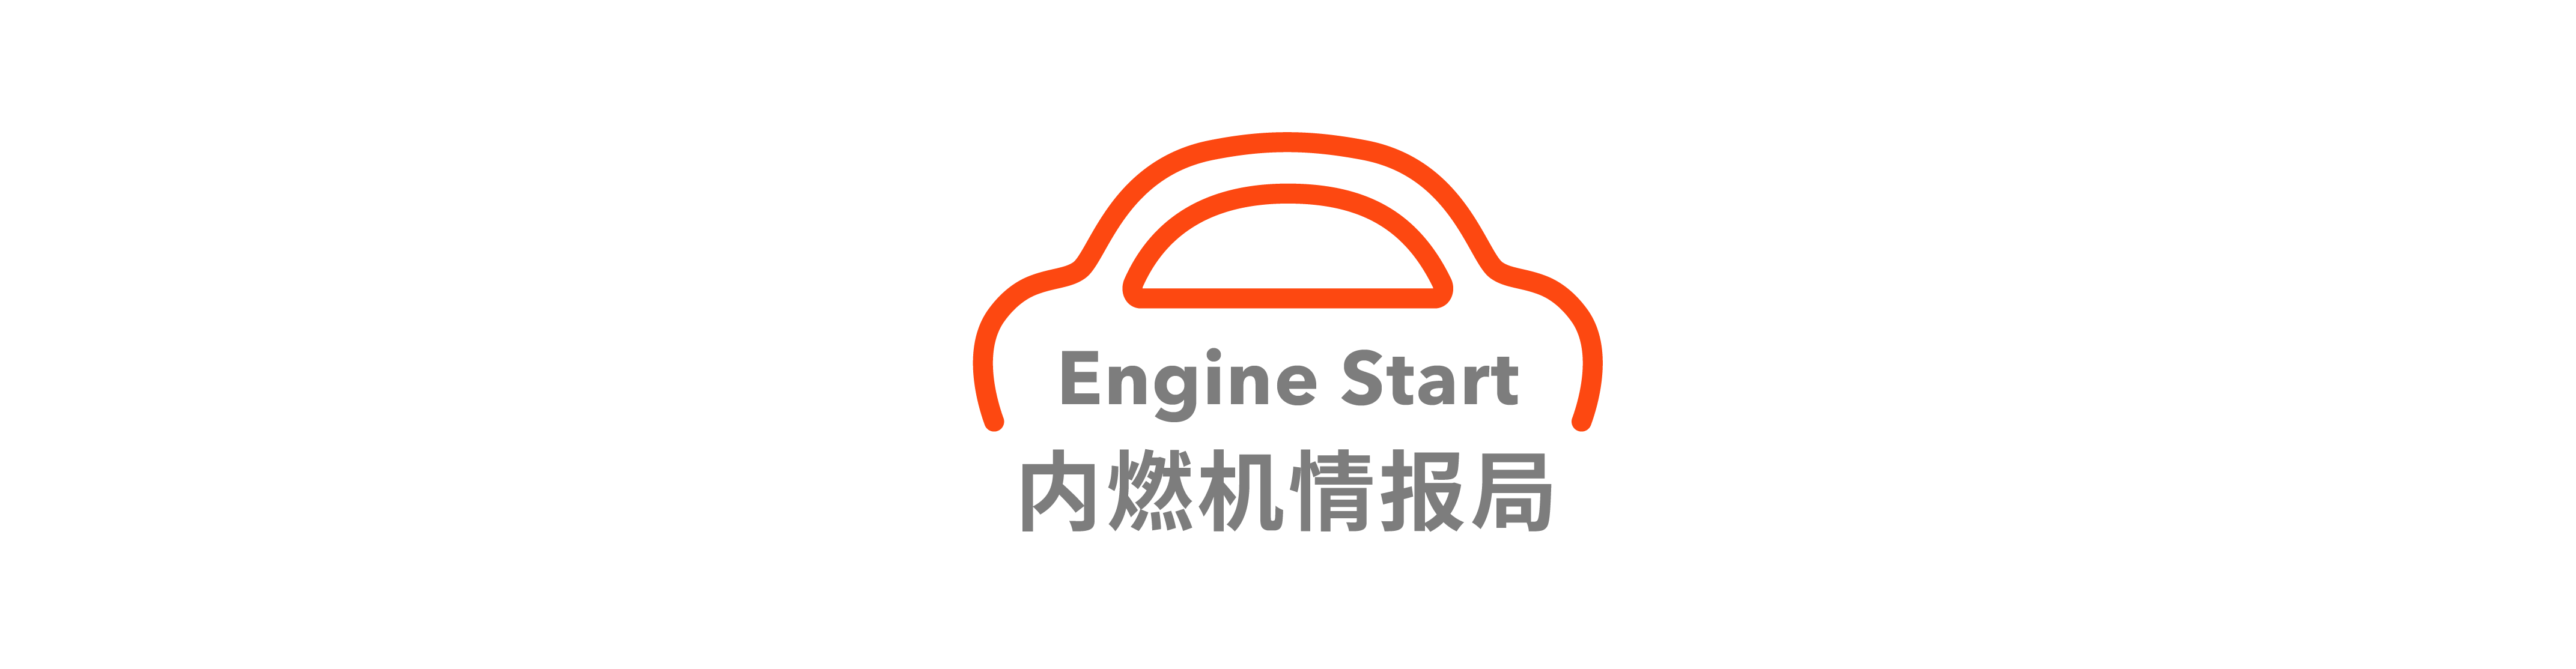 22 - Shenzhen sarà il primo a supportare la guida autonoma L3 su strada / Esposizione della mappa dei brevetti di auto volanti Xpeng Huitian / Volkswagen ID.Buzz apertura all’estero